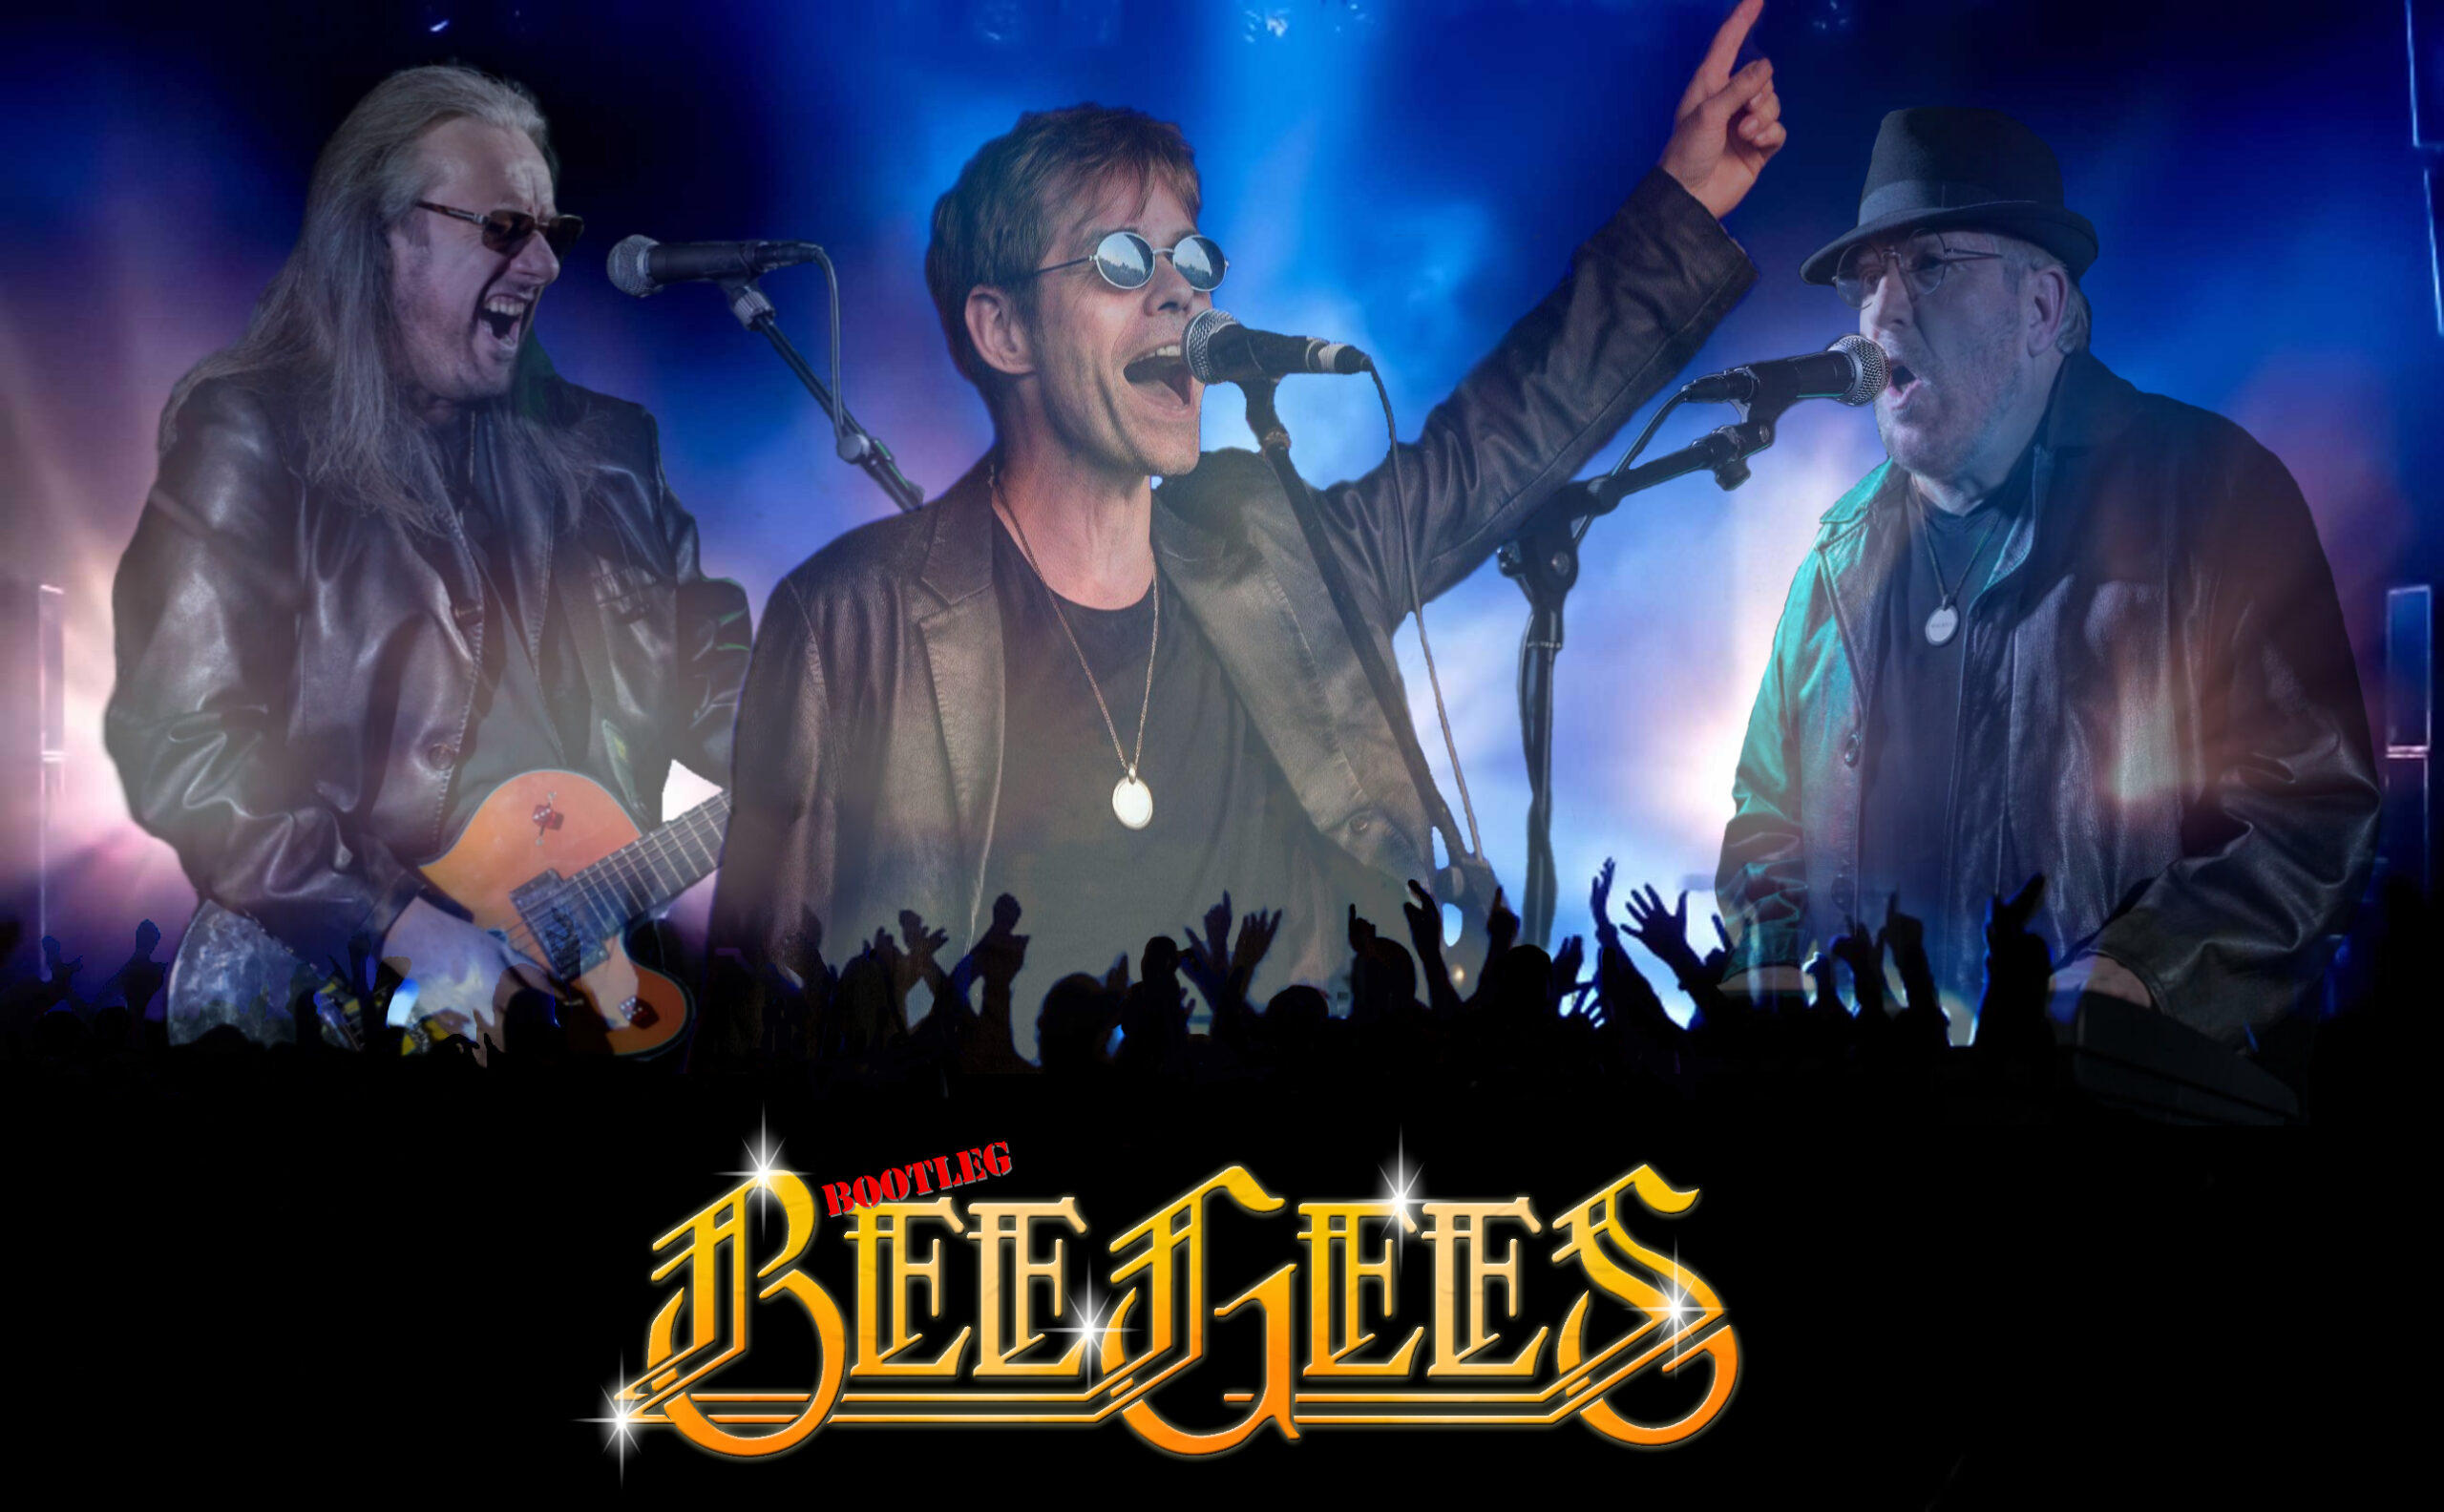 Bootleg Bee Gees